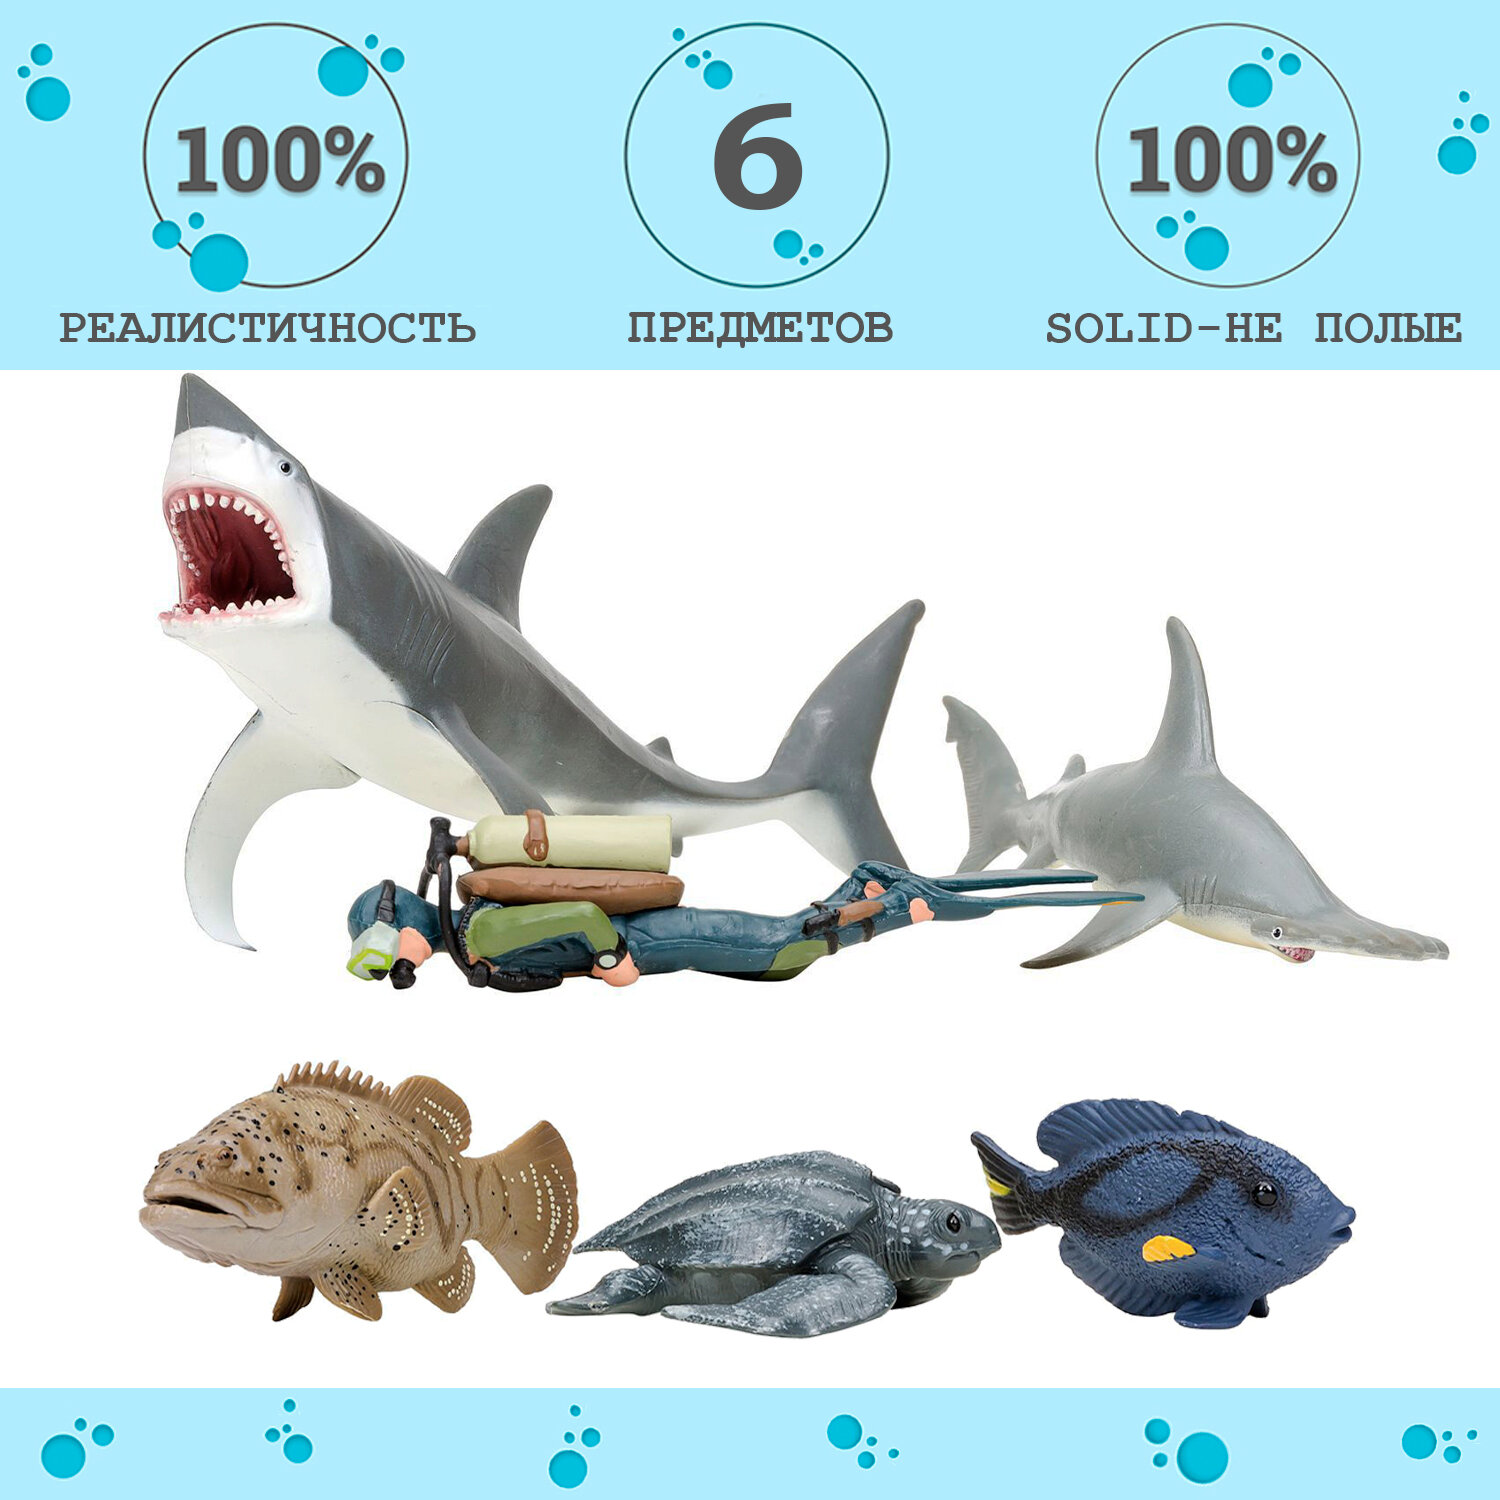 Фигурки игрушки серии "Мир морских животных": Акула, рыба-хирург, кожистая черепаха, акула, рыба групер, дайвер (набор из 5 фигурок животных и 1 чело